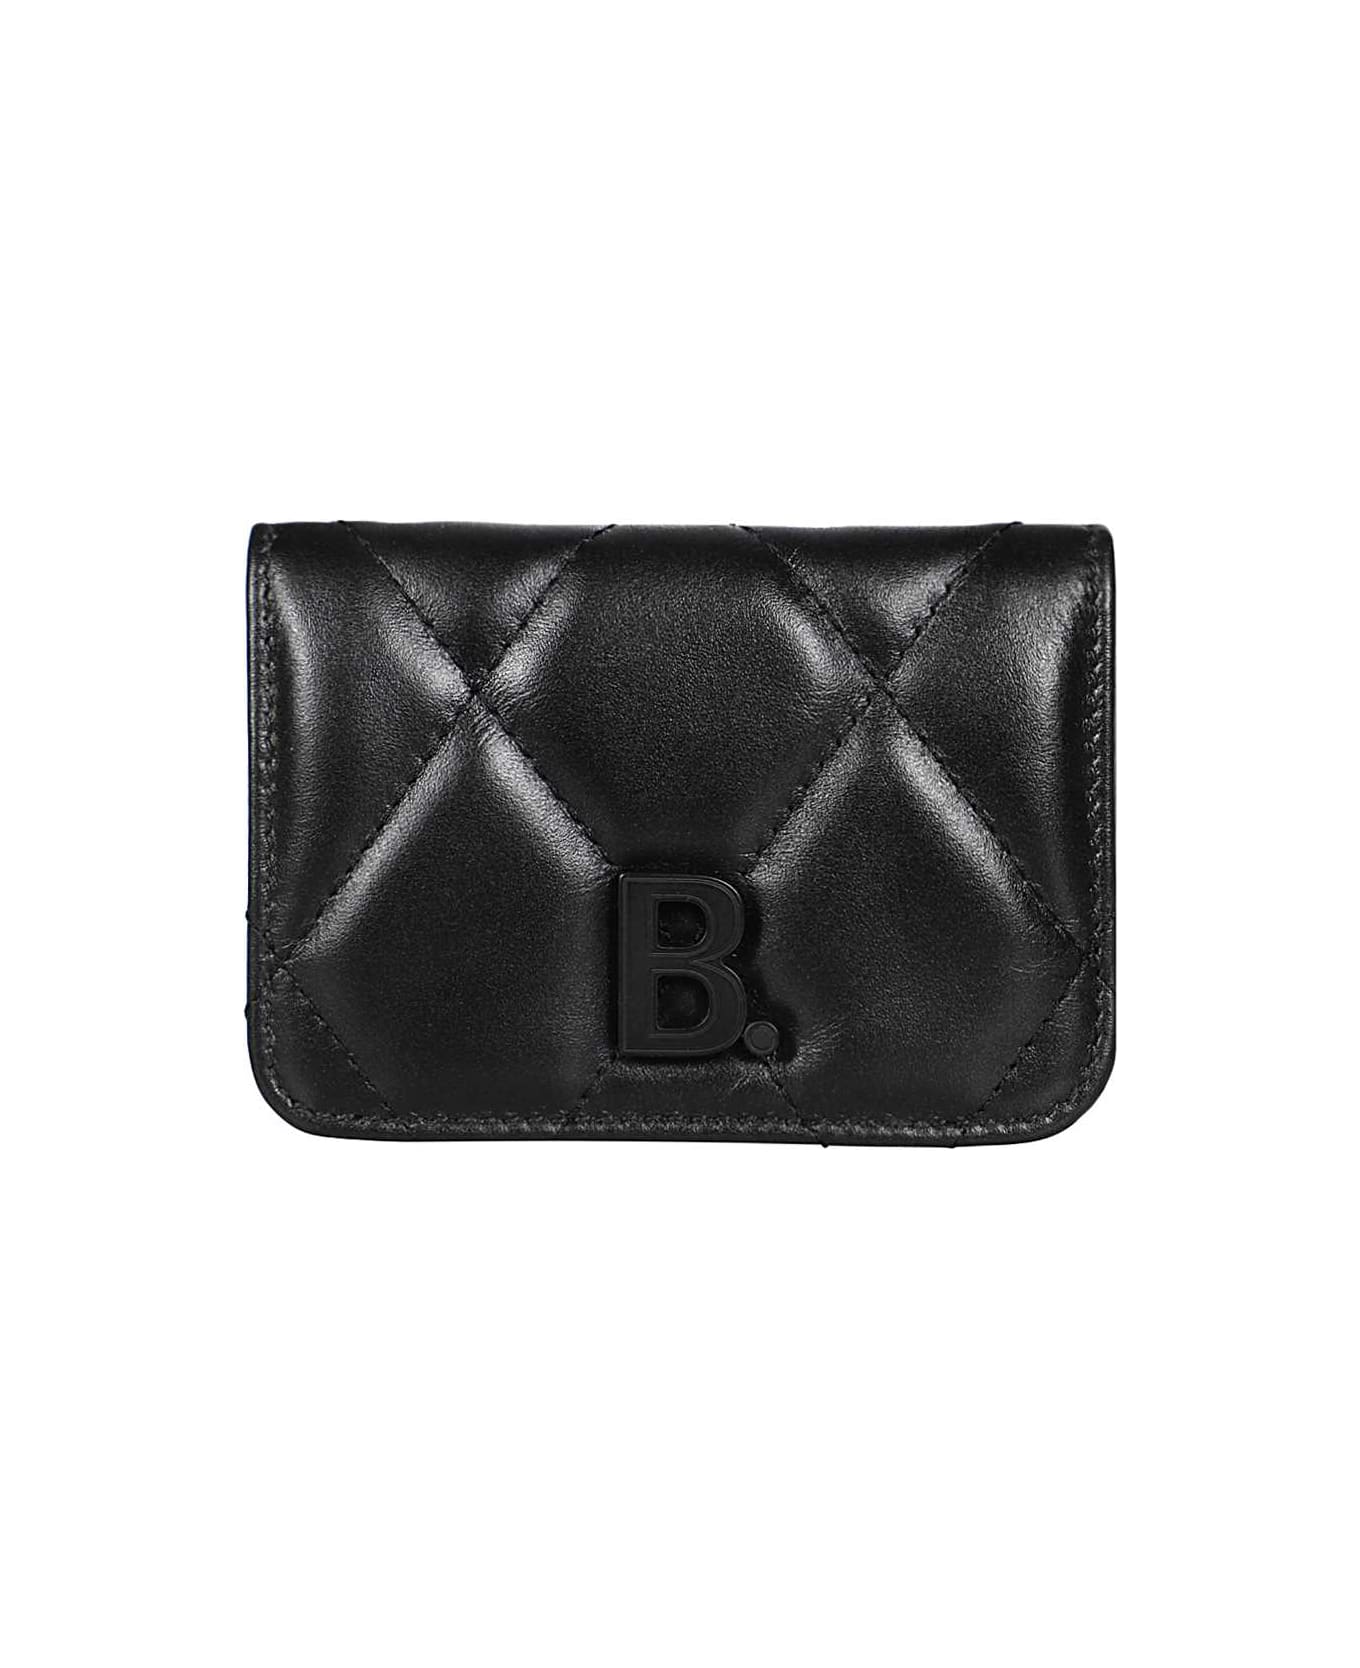 Balenciaga Leather Wallet - black